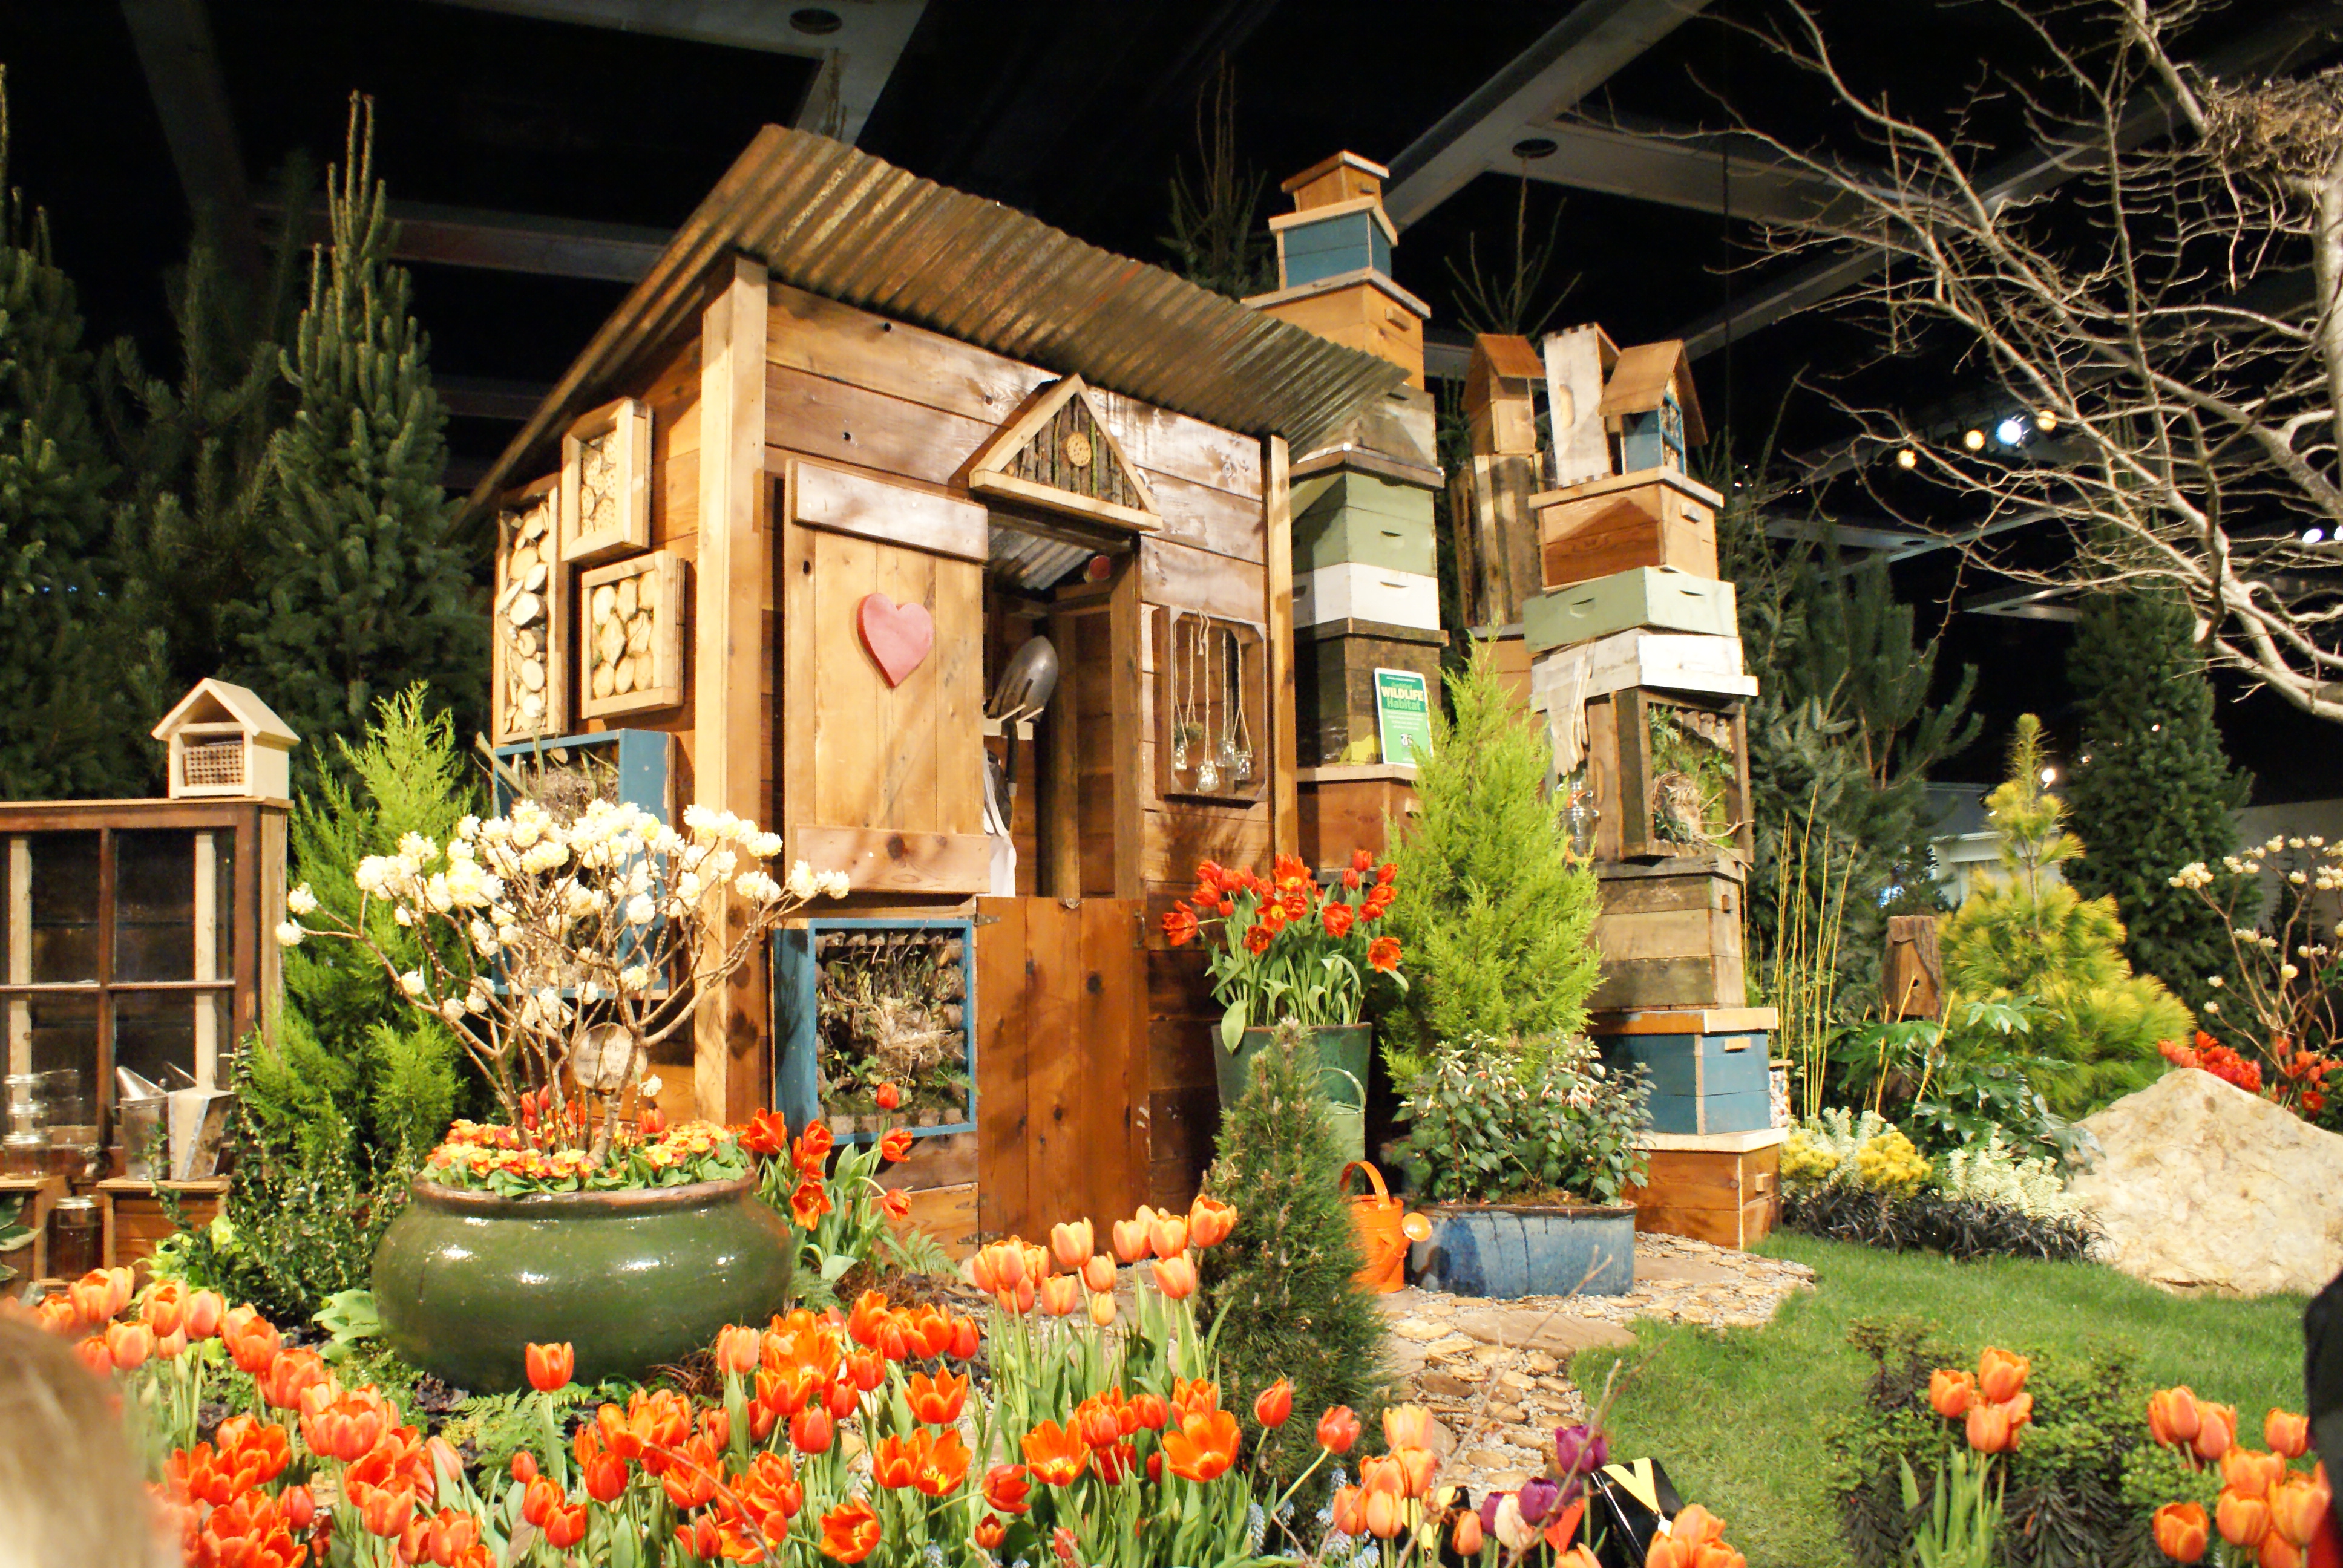 2015 Northwest Flower and Garden Show